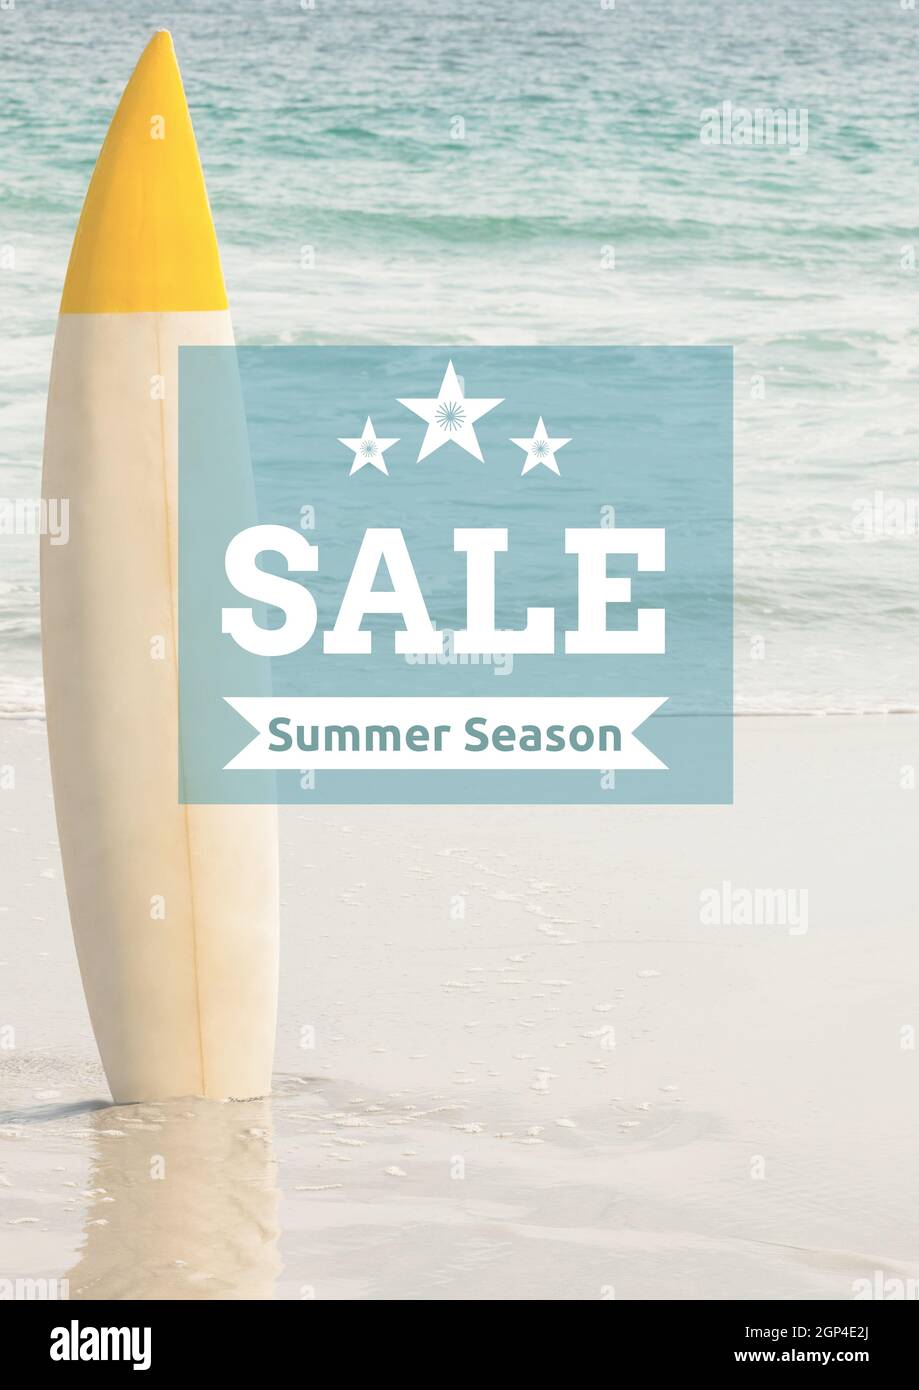 Composición del texto de la temporada de verano de venta sobre tabla de surf y mar Foto de stock